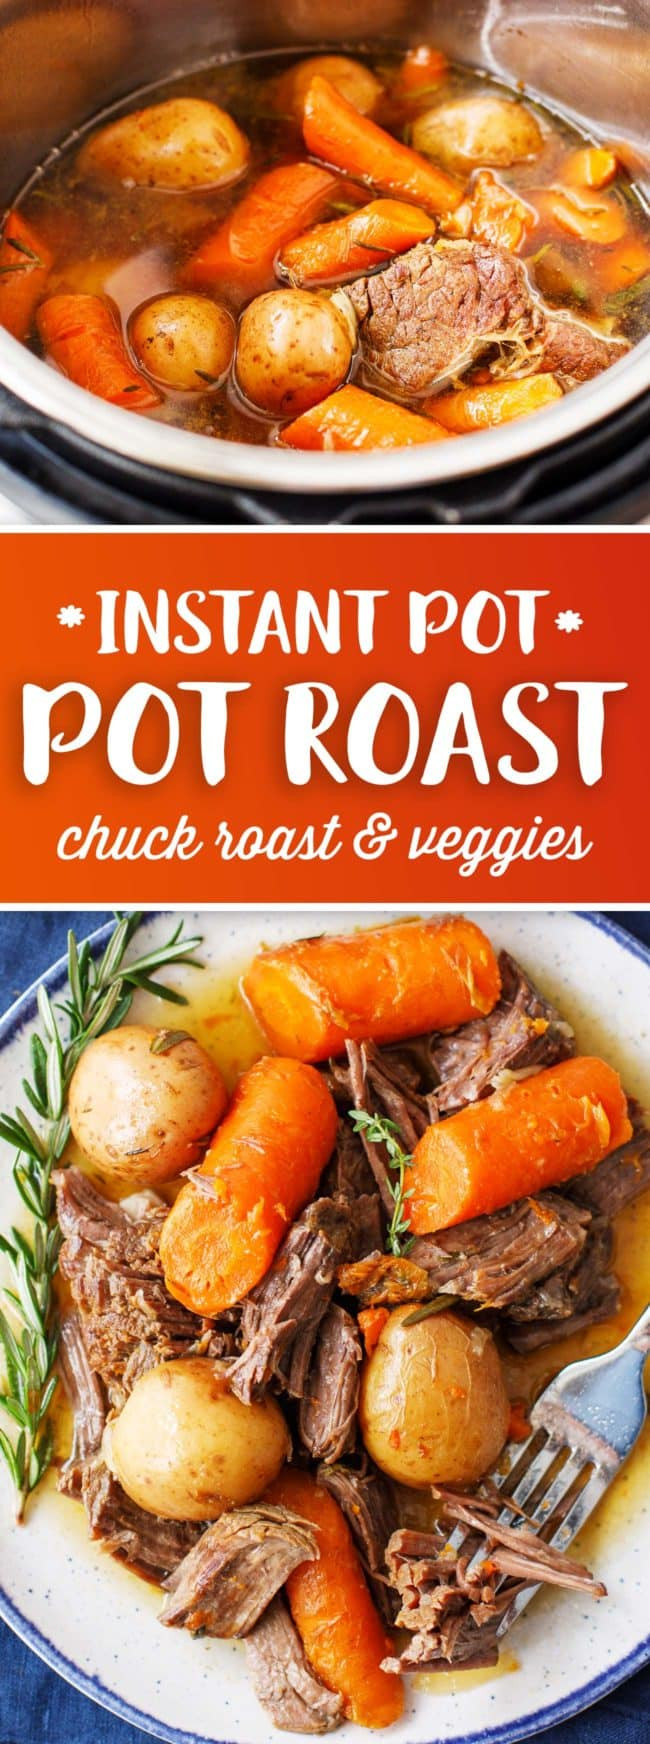 Best Recipes For Instant Pot
 Instant Pot Pot Roast Best Instant Pot Chuck Roast Recipe